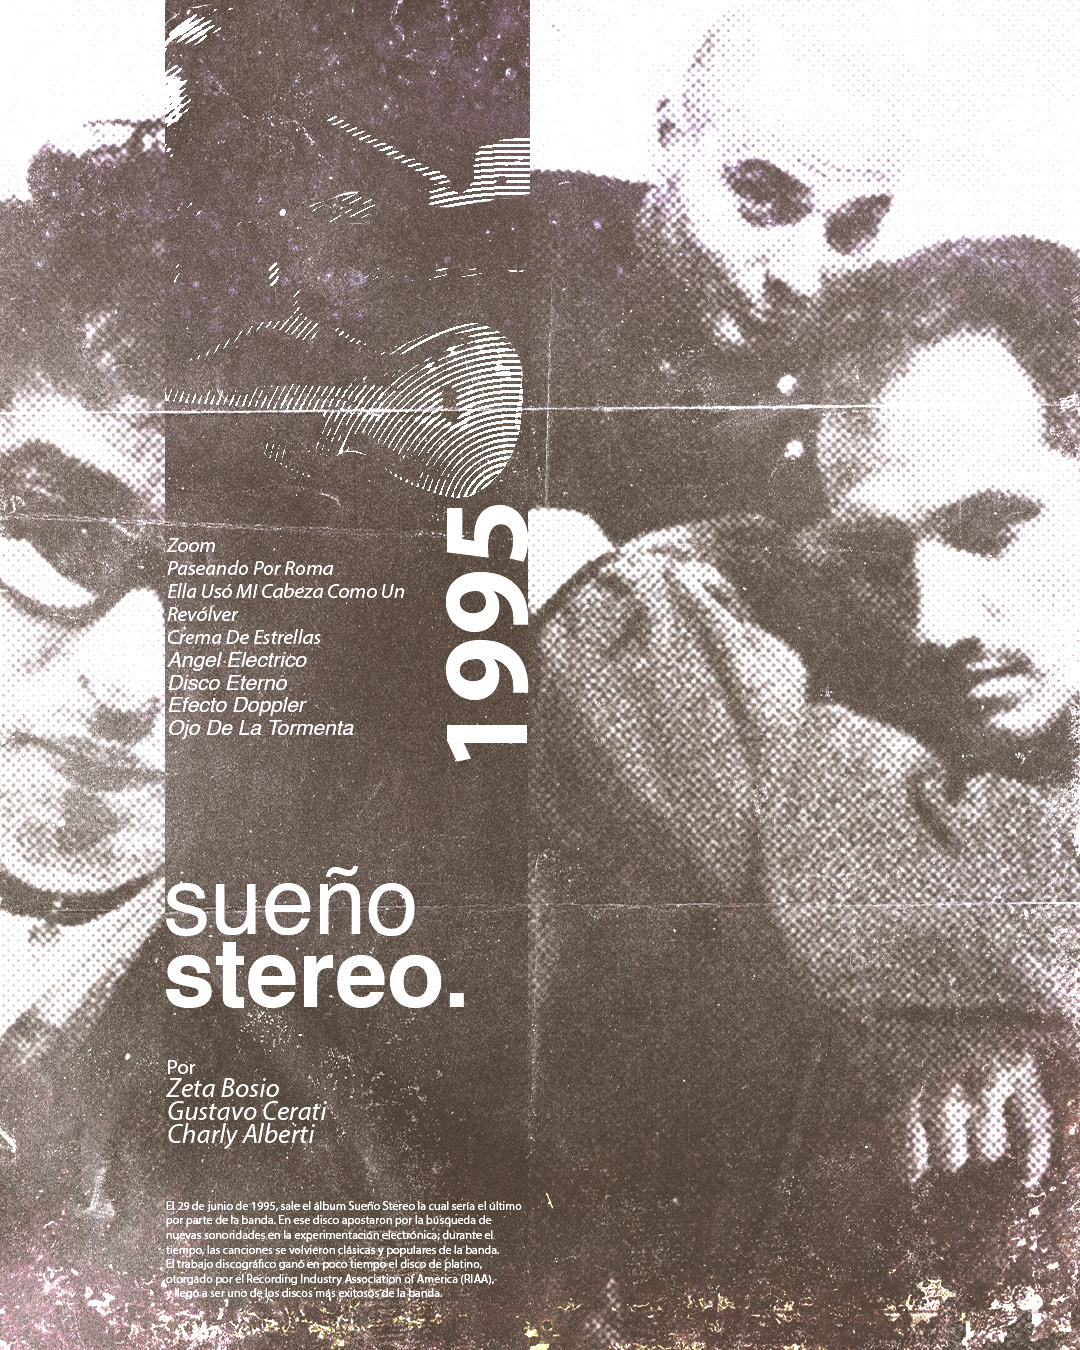 soda stereo rock poster design freelancer cerati musica music Cover Art vinyl